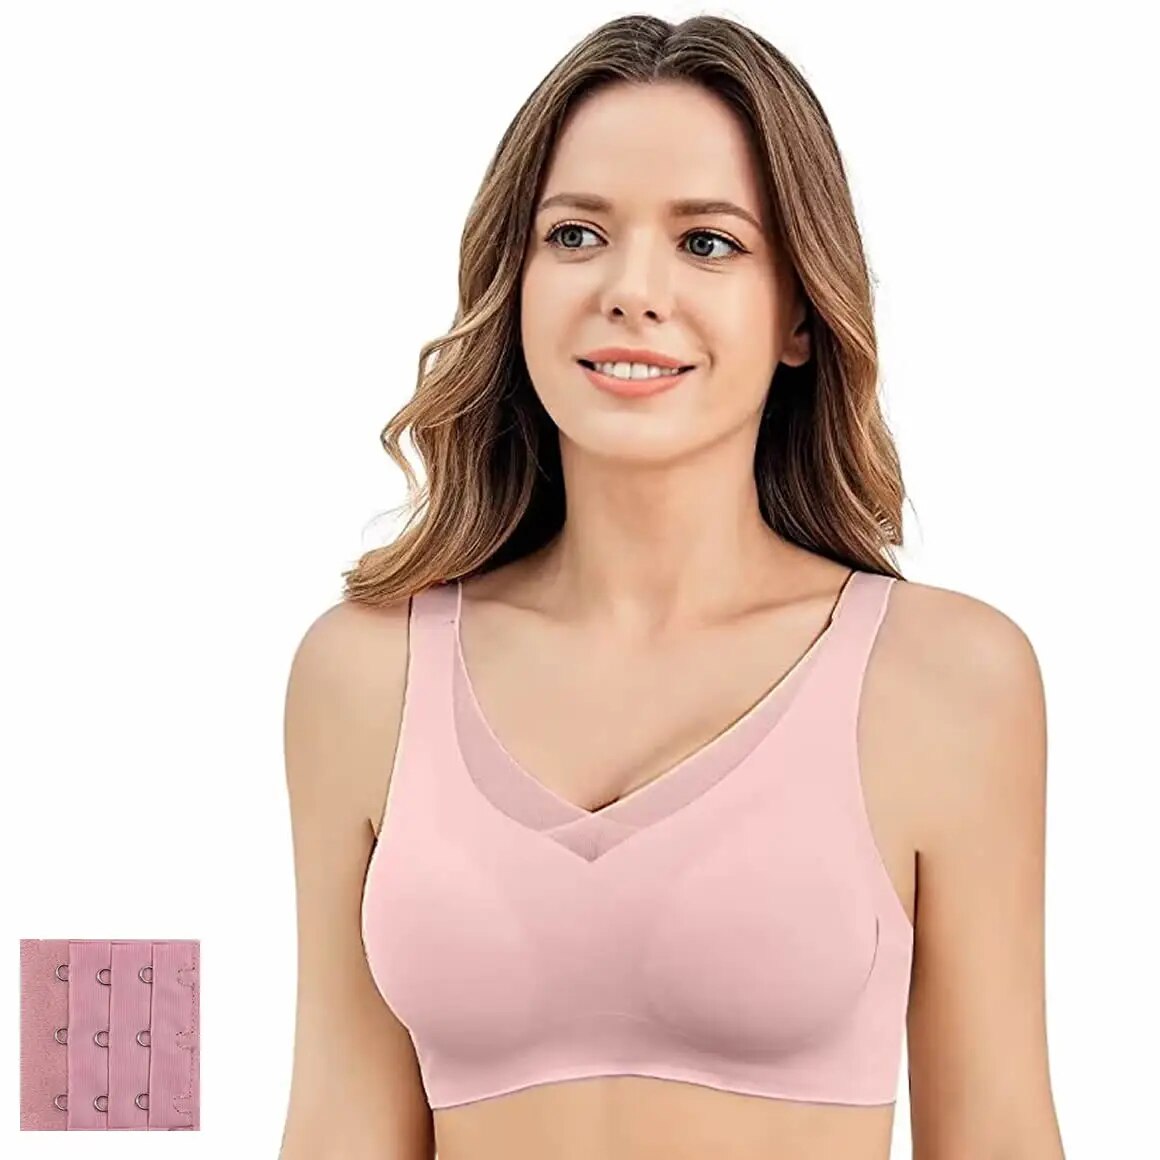 WYCO MALL yxz080 Seamless mastectomy bra women's breast prosthesis